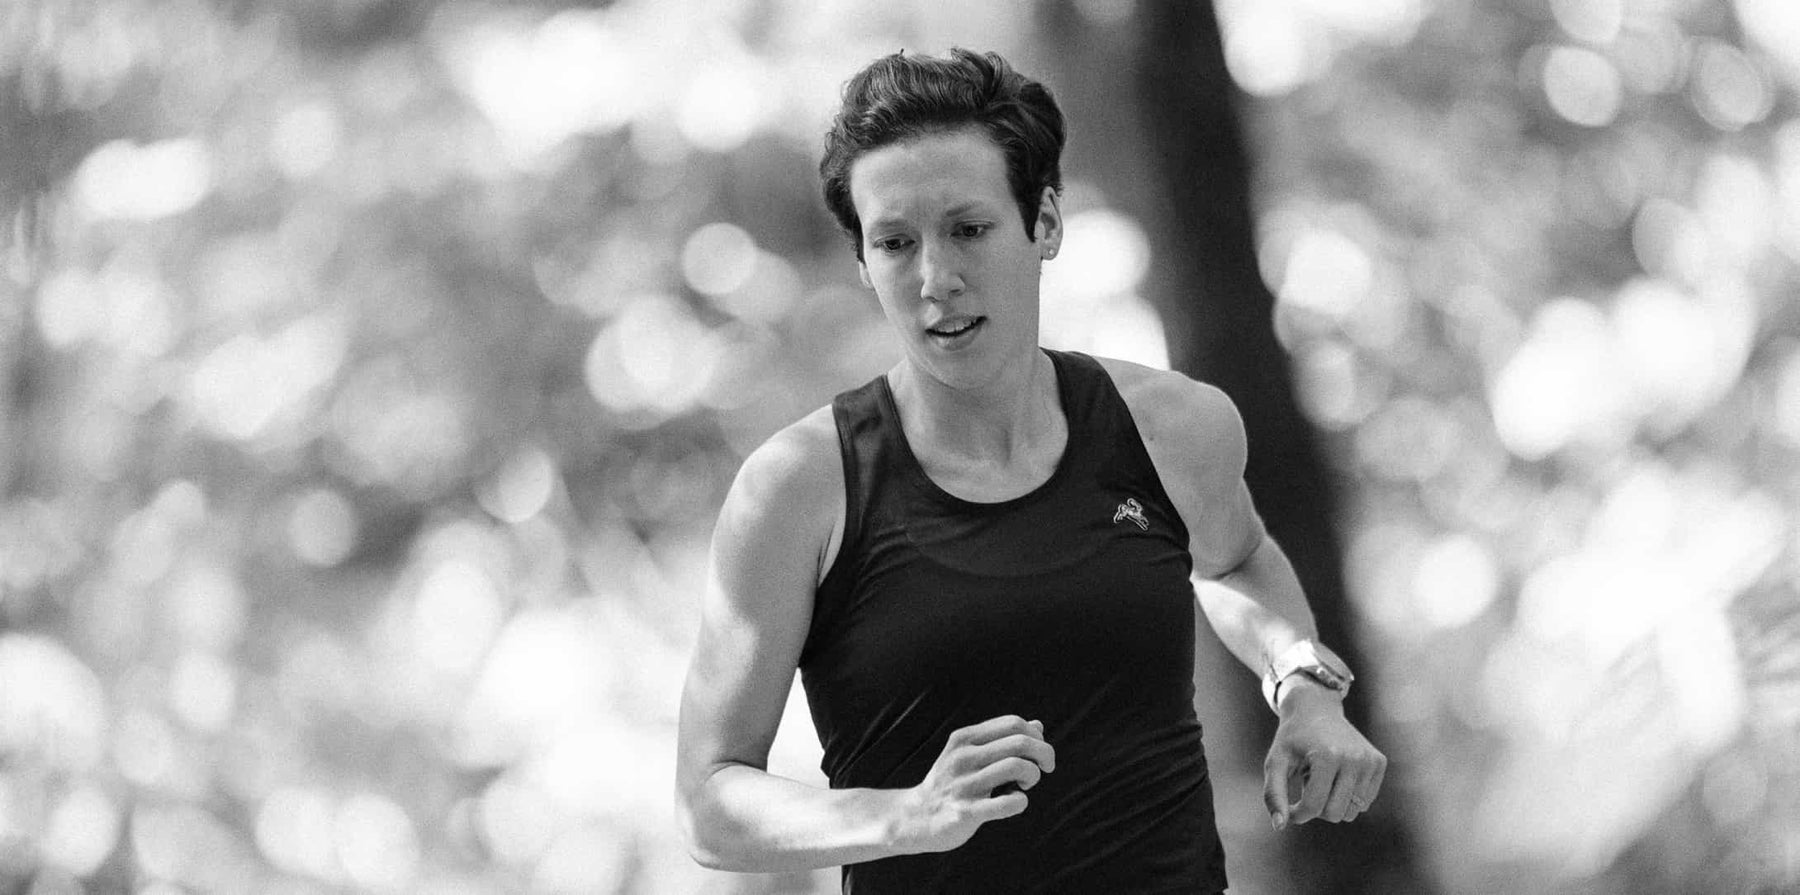 Meet Liz Canty – Speedland Athlete